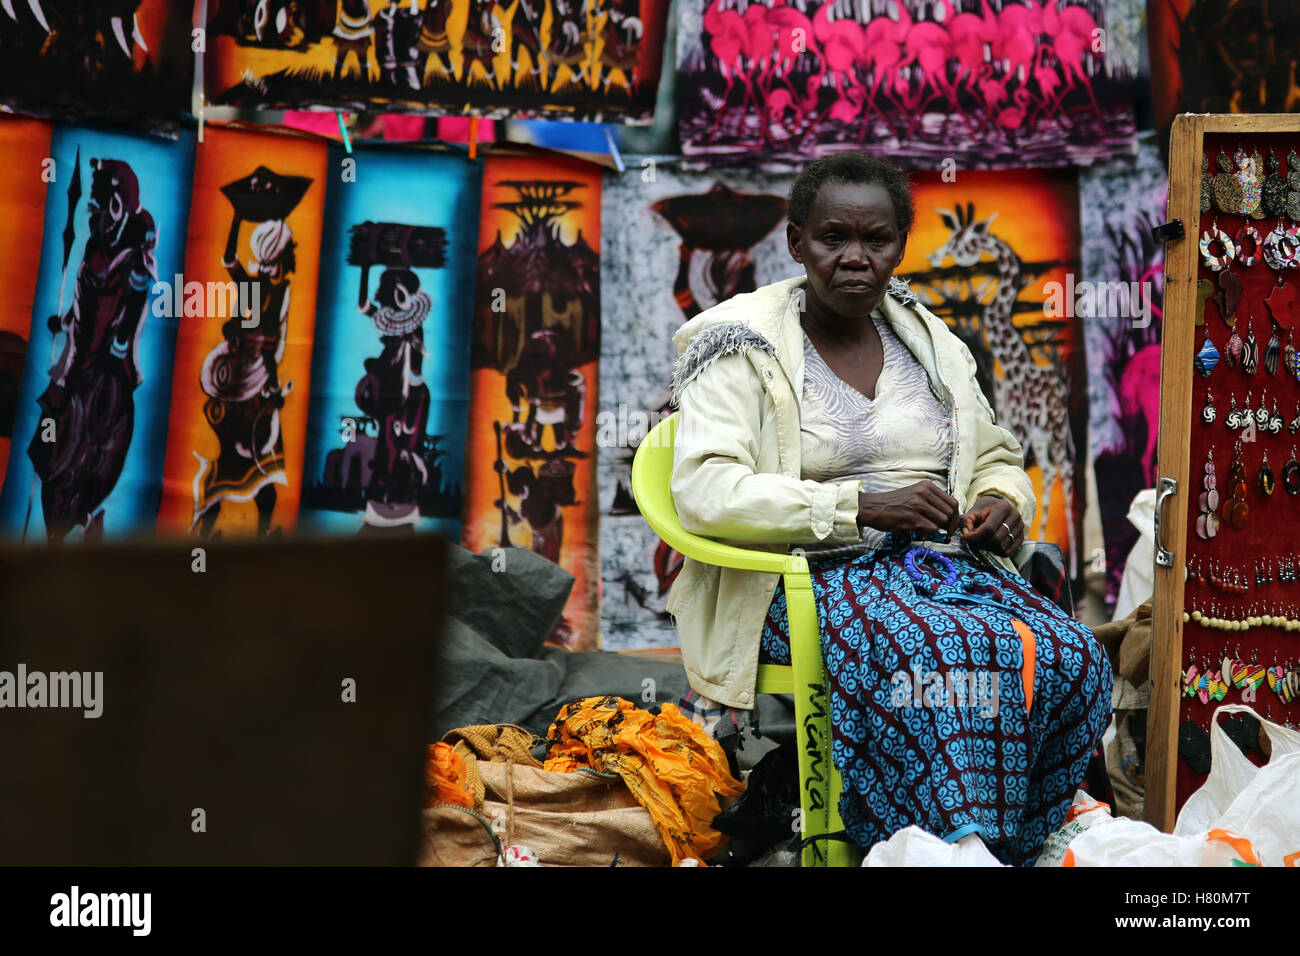 File:Masaai blankets at the Maasai market. Nairobi Kenya.jpg